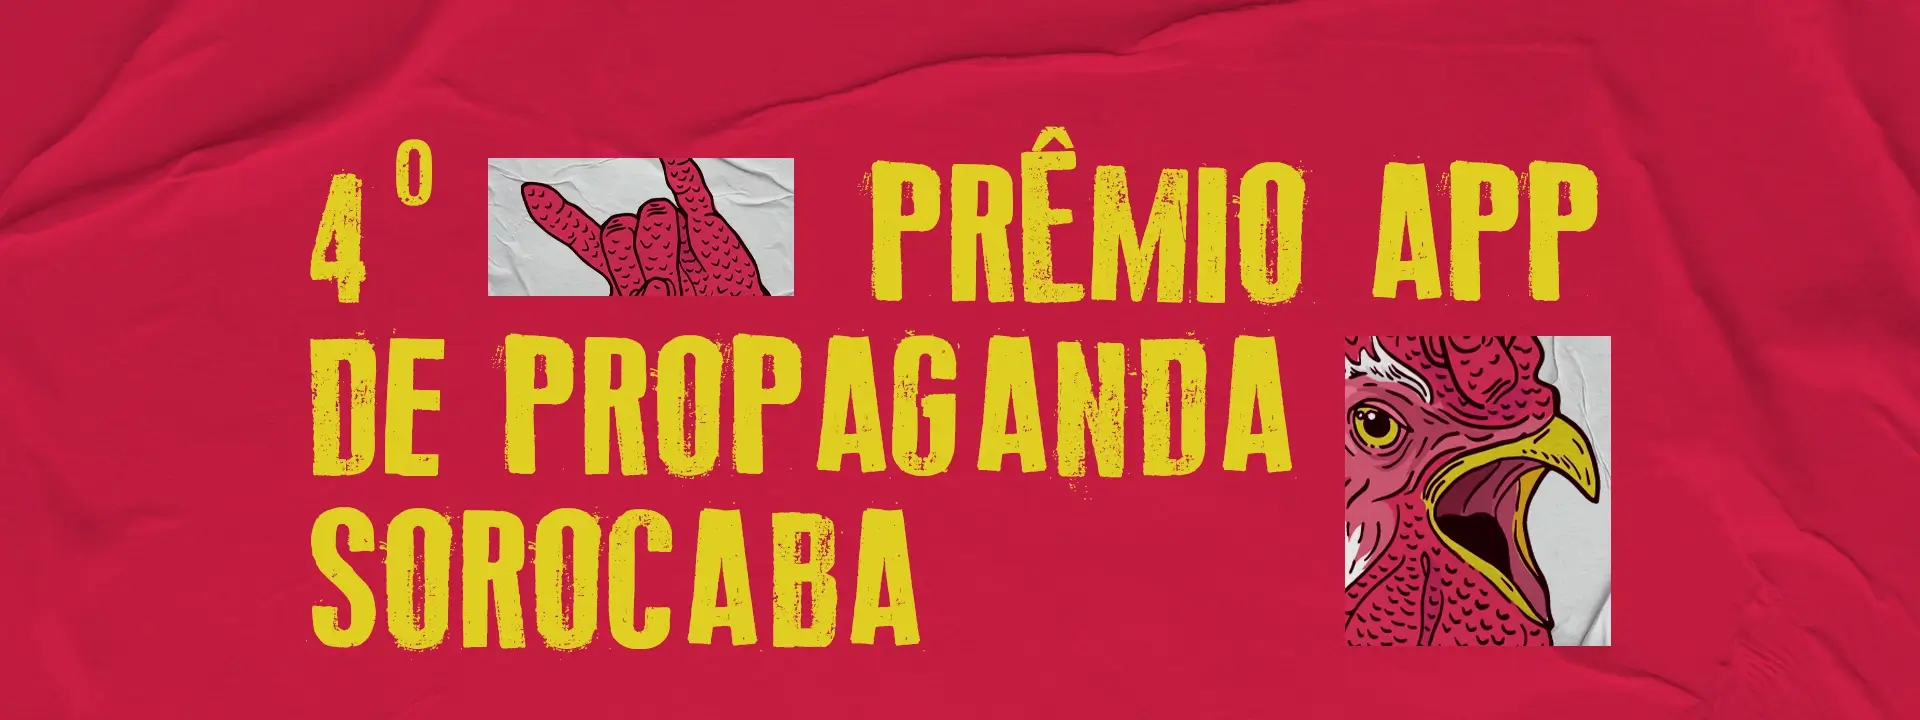 4° Prêmio App de propaganda Sorocaba